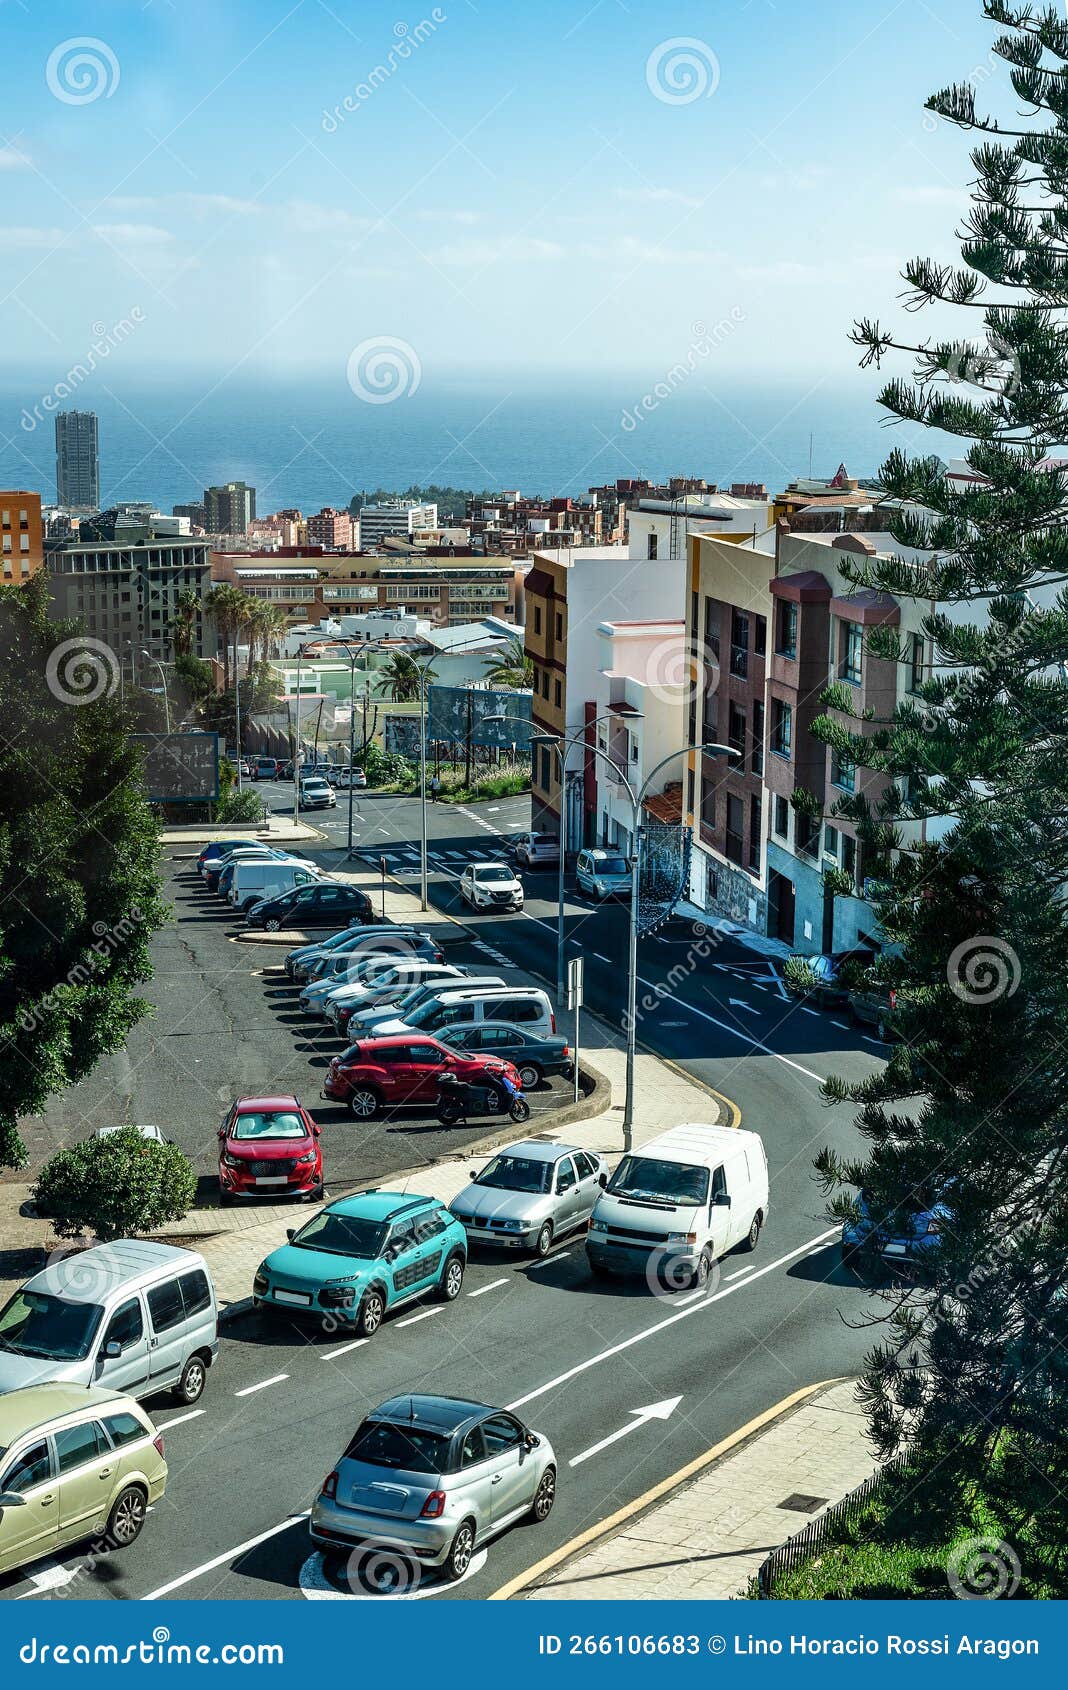 calle de ciudad cerca del mar con automoviles circulando en santa cruz de tenerife. islas canarias